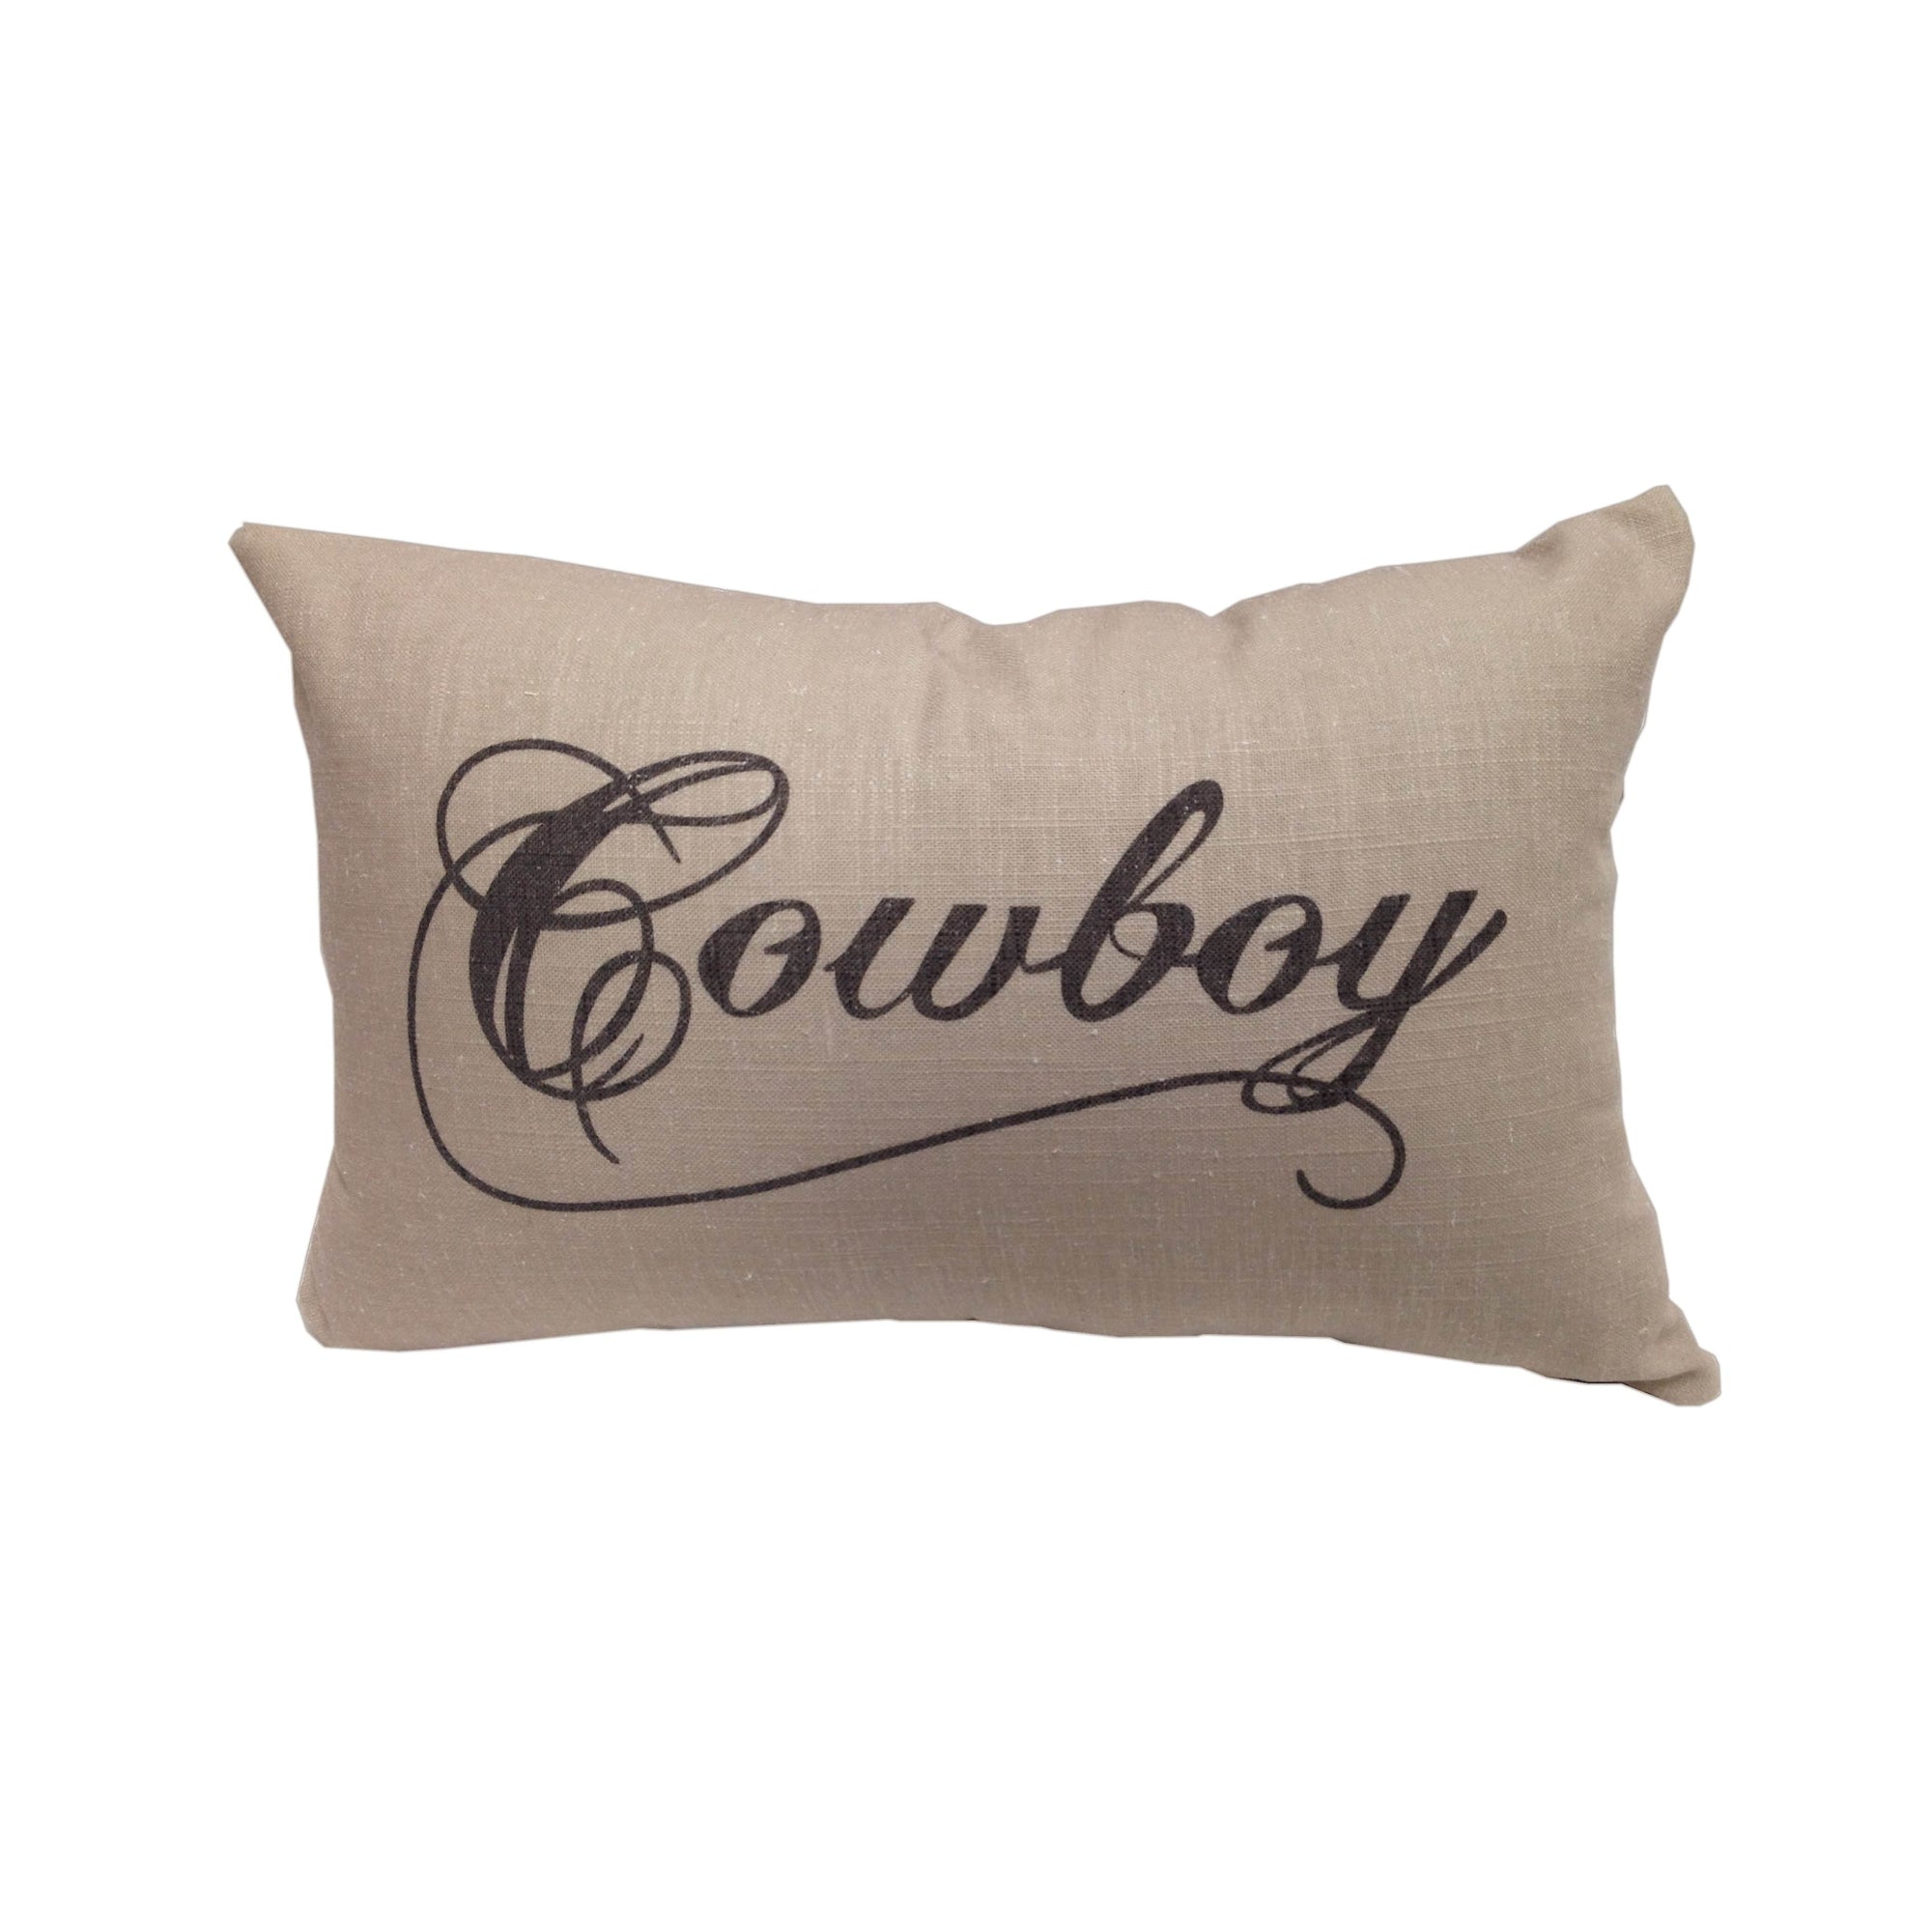 Cowboy/Cowgirl Linen Lumbar Pillow, 12x19 Cowboy Pillow